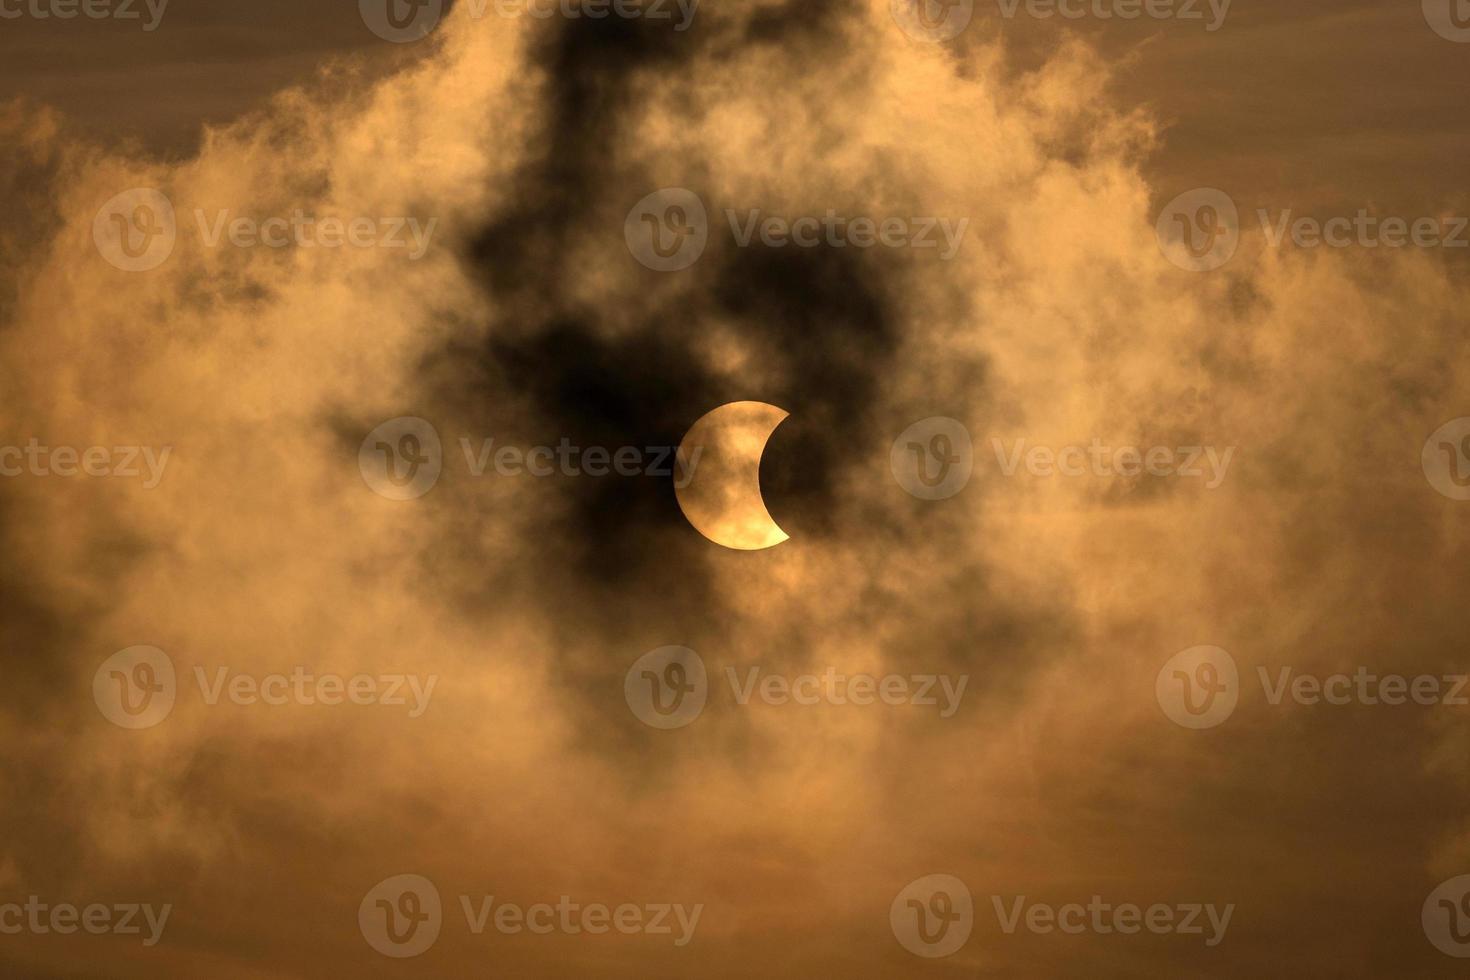 la luna cubriendo el sol en un eclipse parcial con nubes dramáticas. antecedentes científicos, fenómeno astronómico. foto